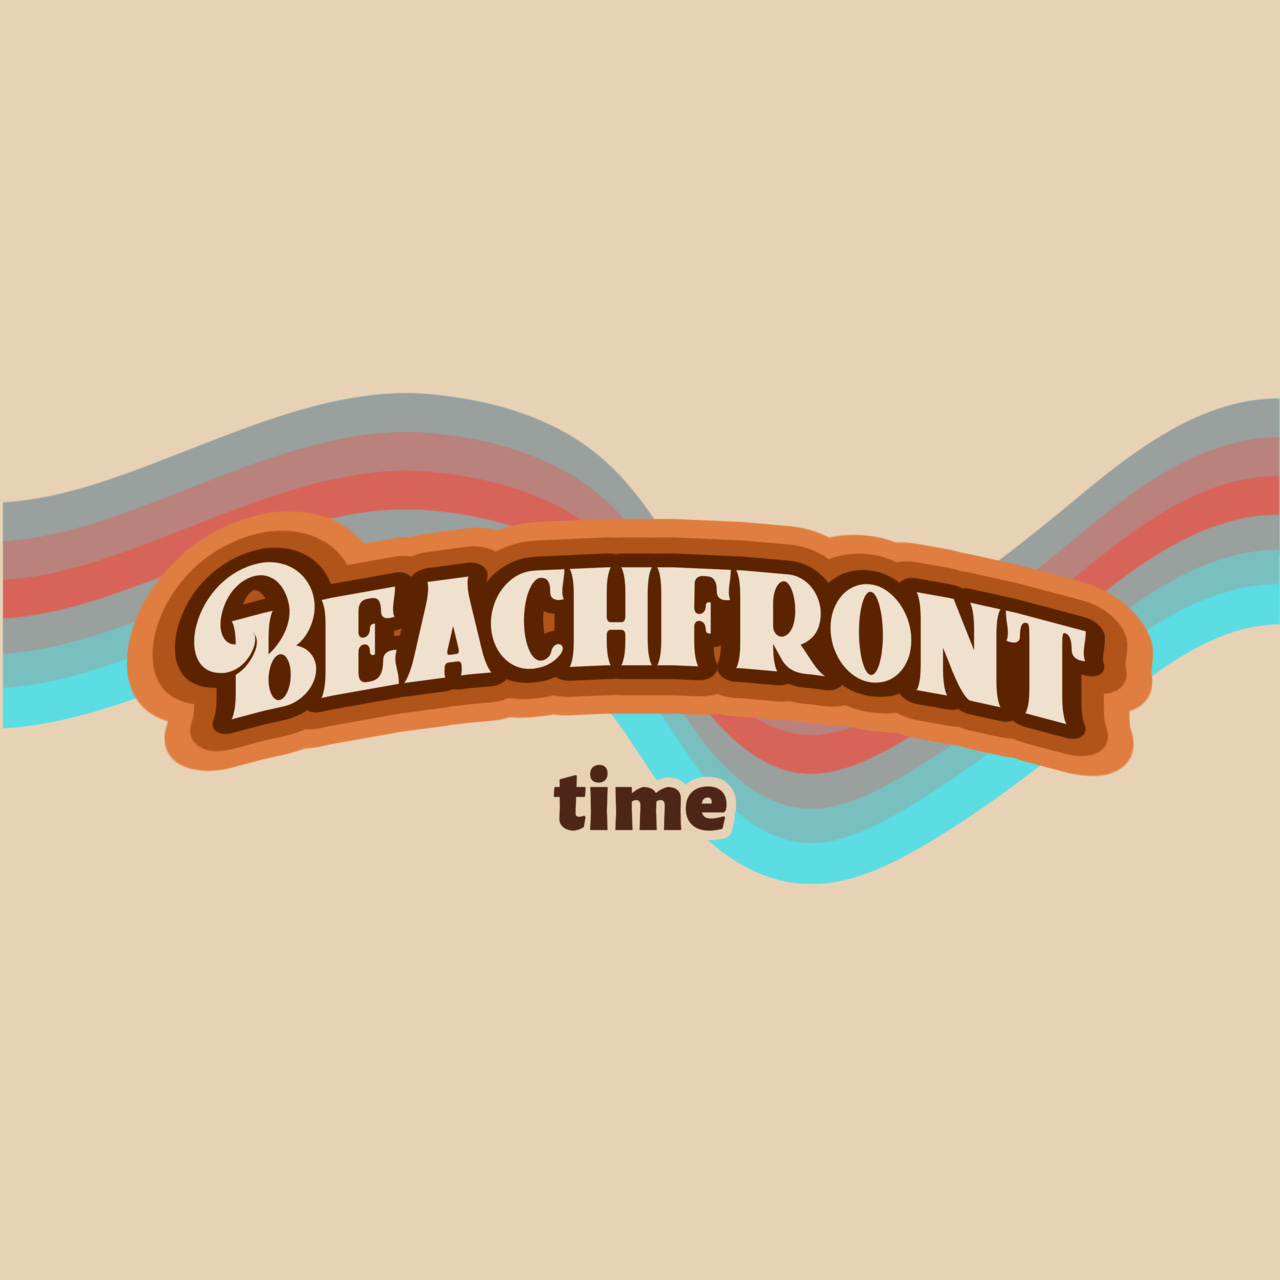 Beachfront time